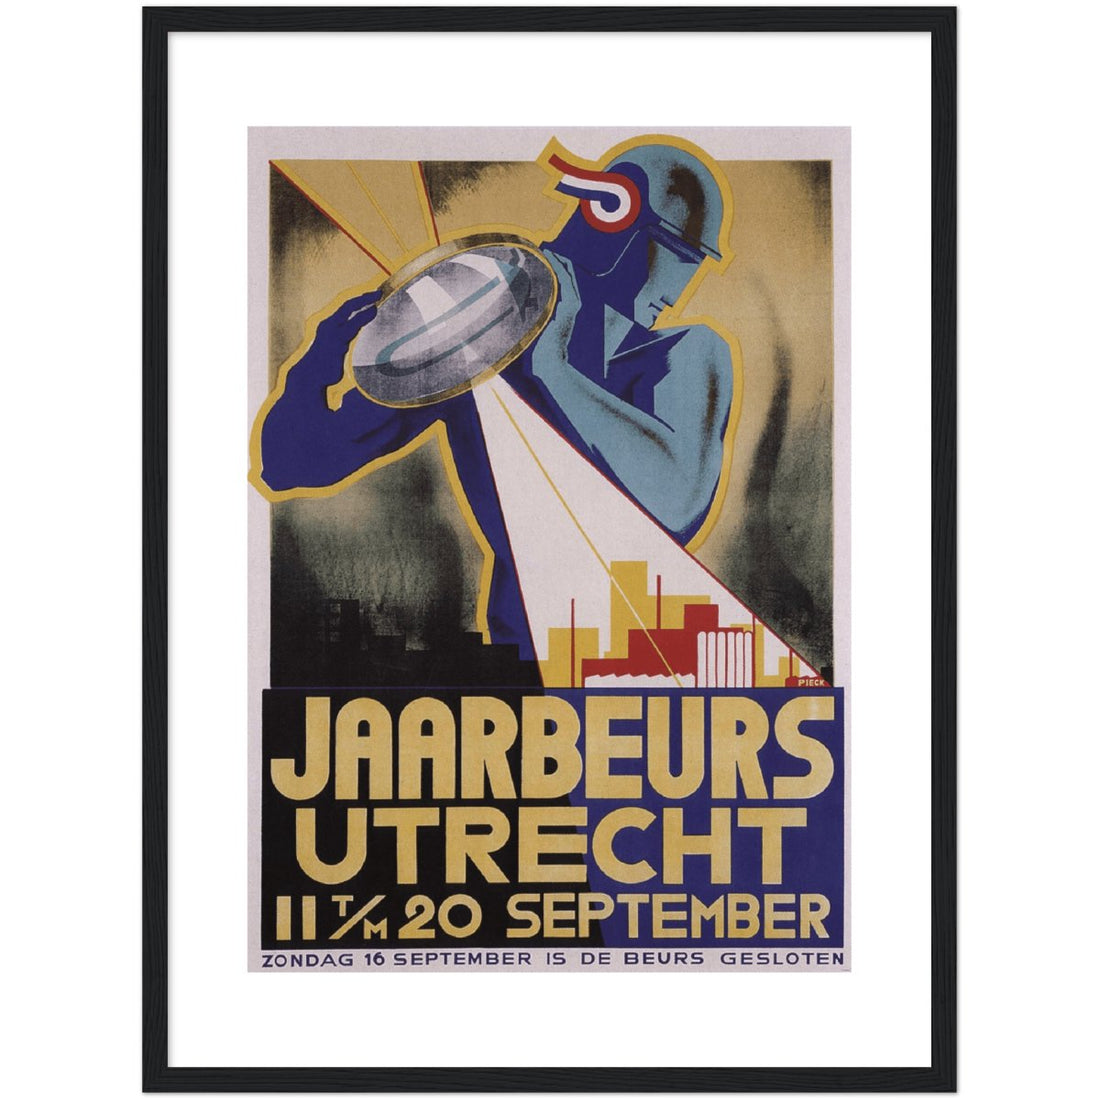 Jaarbeeurs Utrecht 1920s Classic Matte Paper Wooden Framed Poster - TINT - Print Material - TINT - 0451a447-704a-4129-8cfe-a0b8a7a2729f